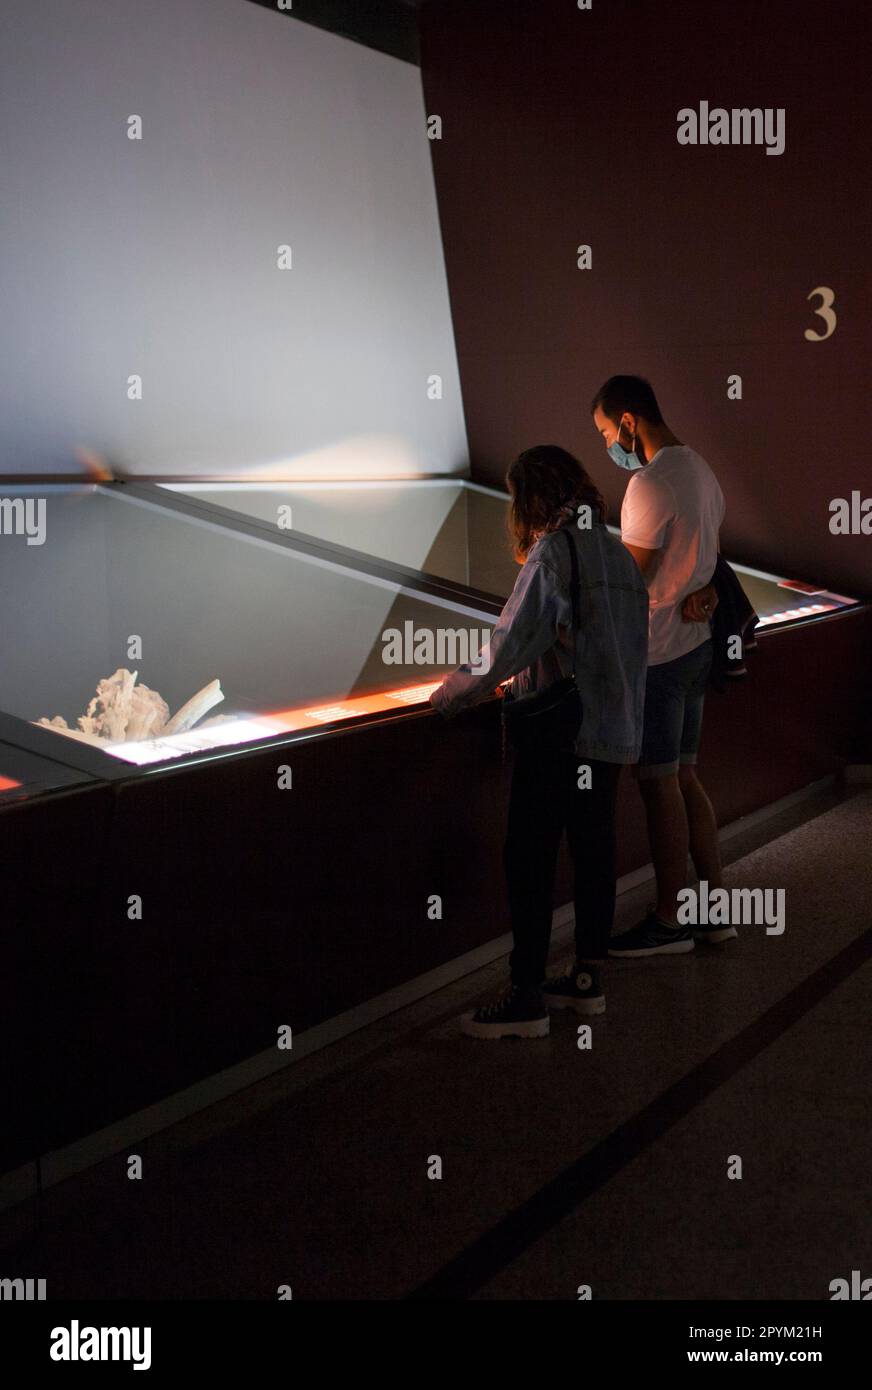 Alcala de Henares, Spanien - 10. Okt. 2020: Besucher der Ausstellung im Archäologischen Nationalmuseum von Madrid. Regionale Archäologische Muse Stockfoto